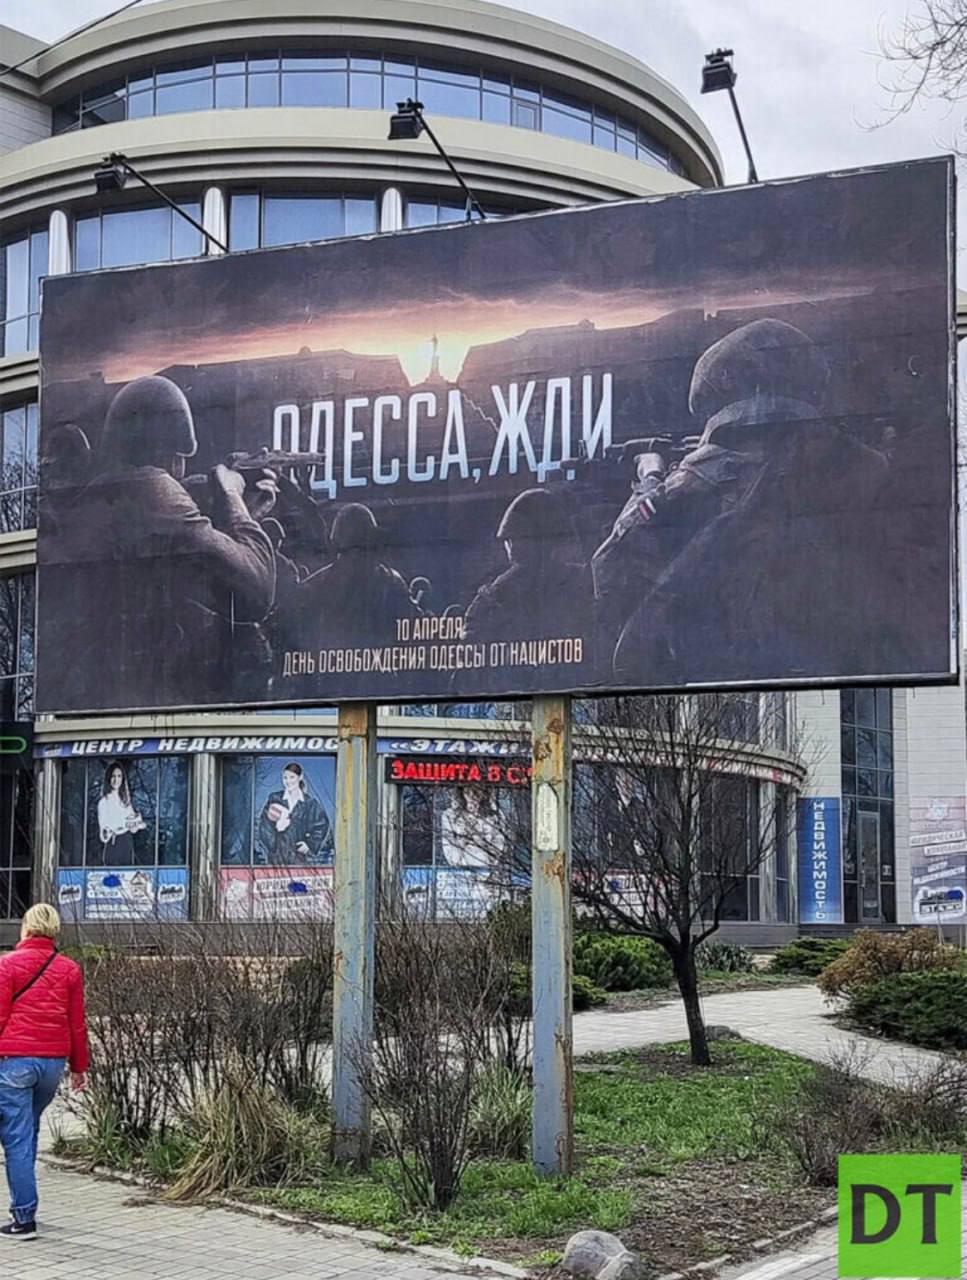 🤬"Одесса, жди" - такие баннеры появились во временно оккупированном Донецке 